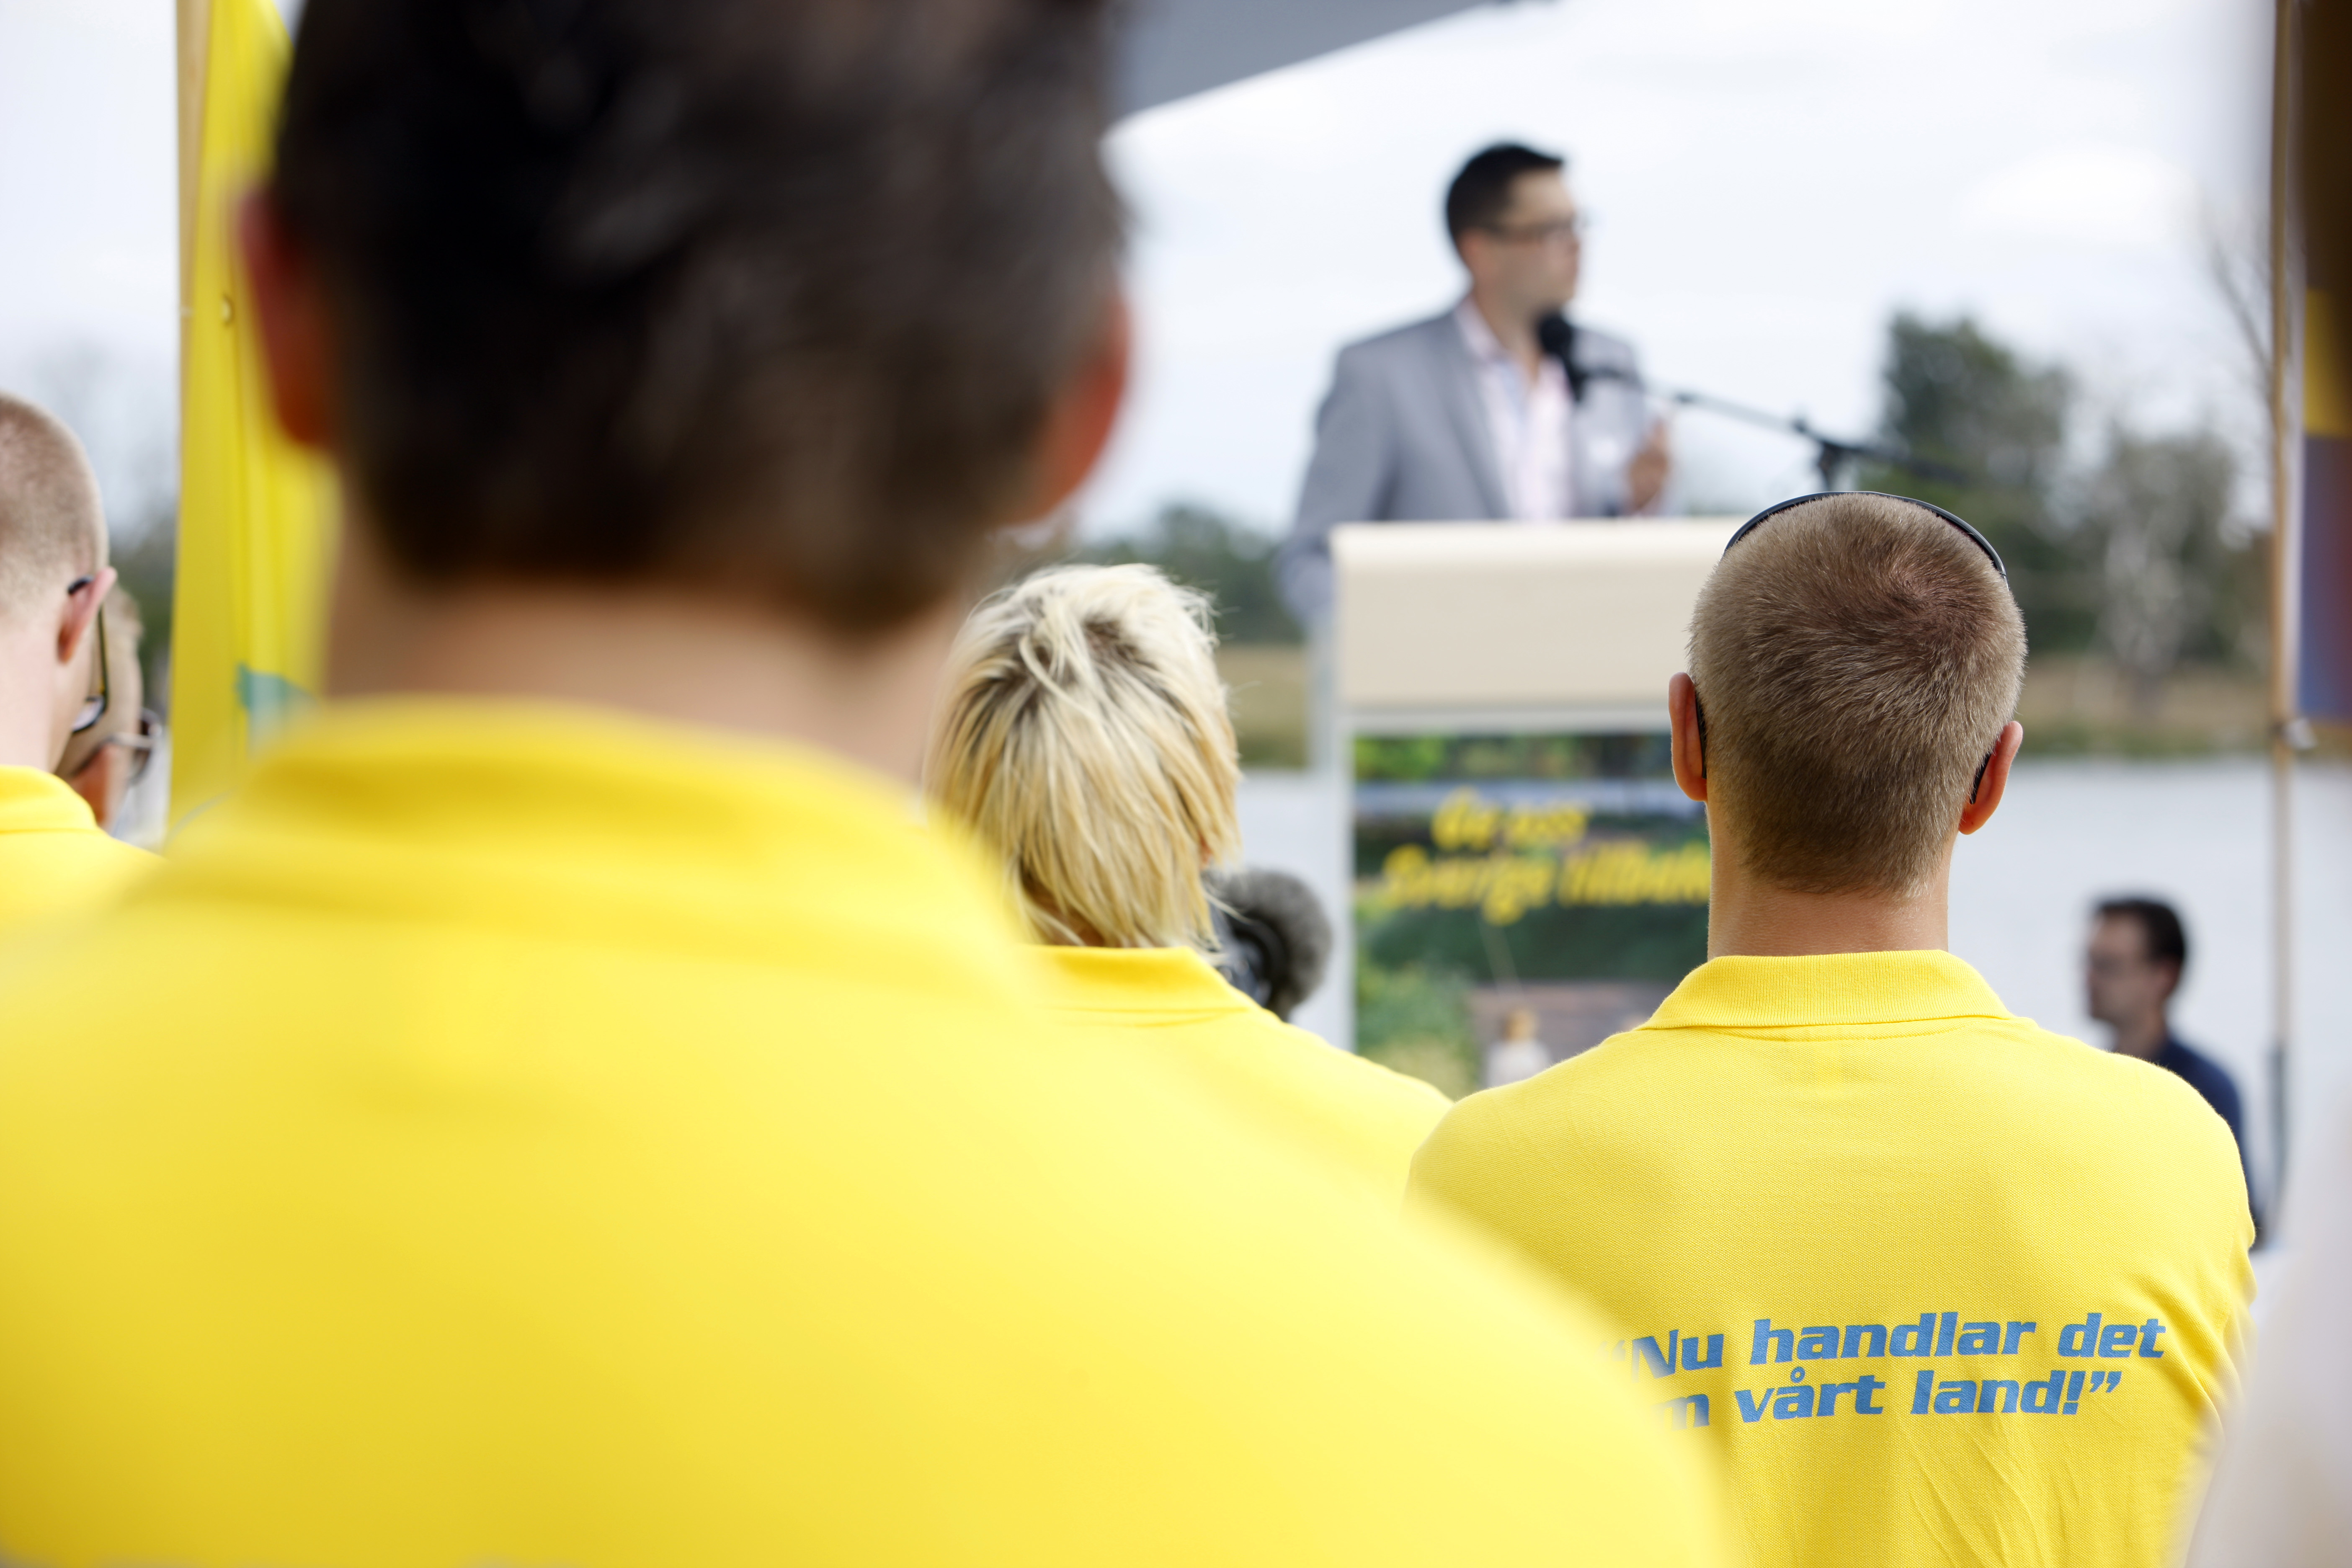 "Nu handlar det om vårt land." Så lyder trycket på åhörarnas gula tröjor när Jimmie Åkesson håller tal.